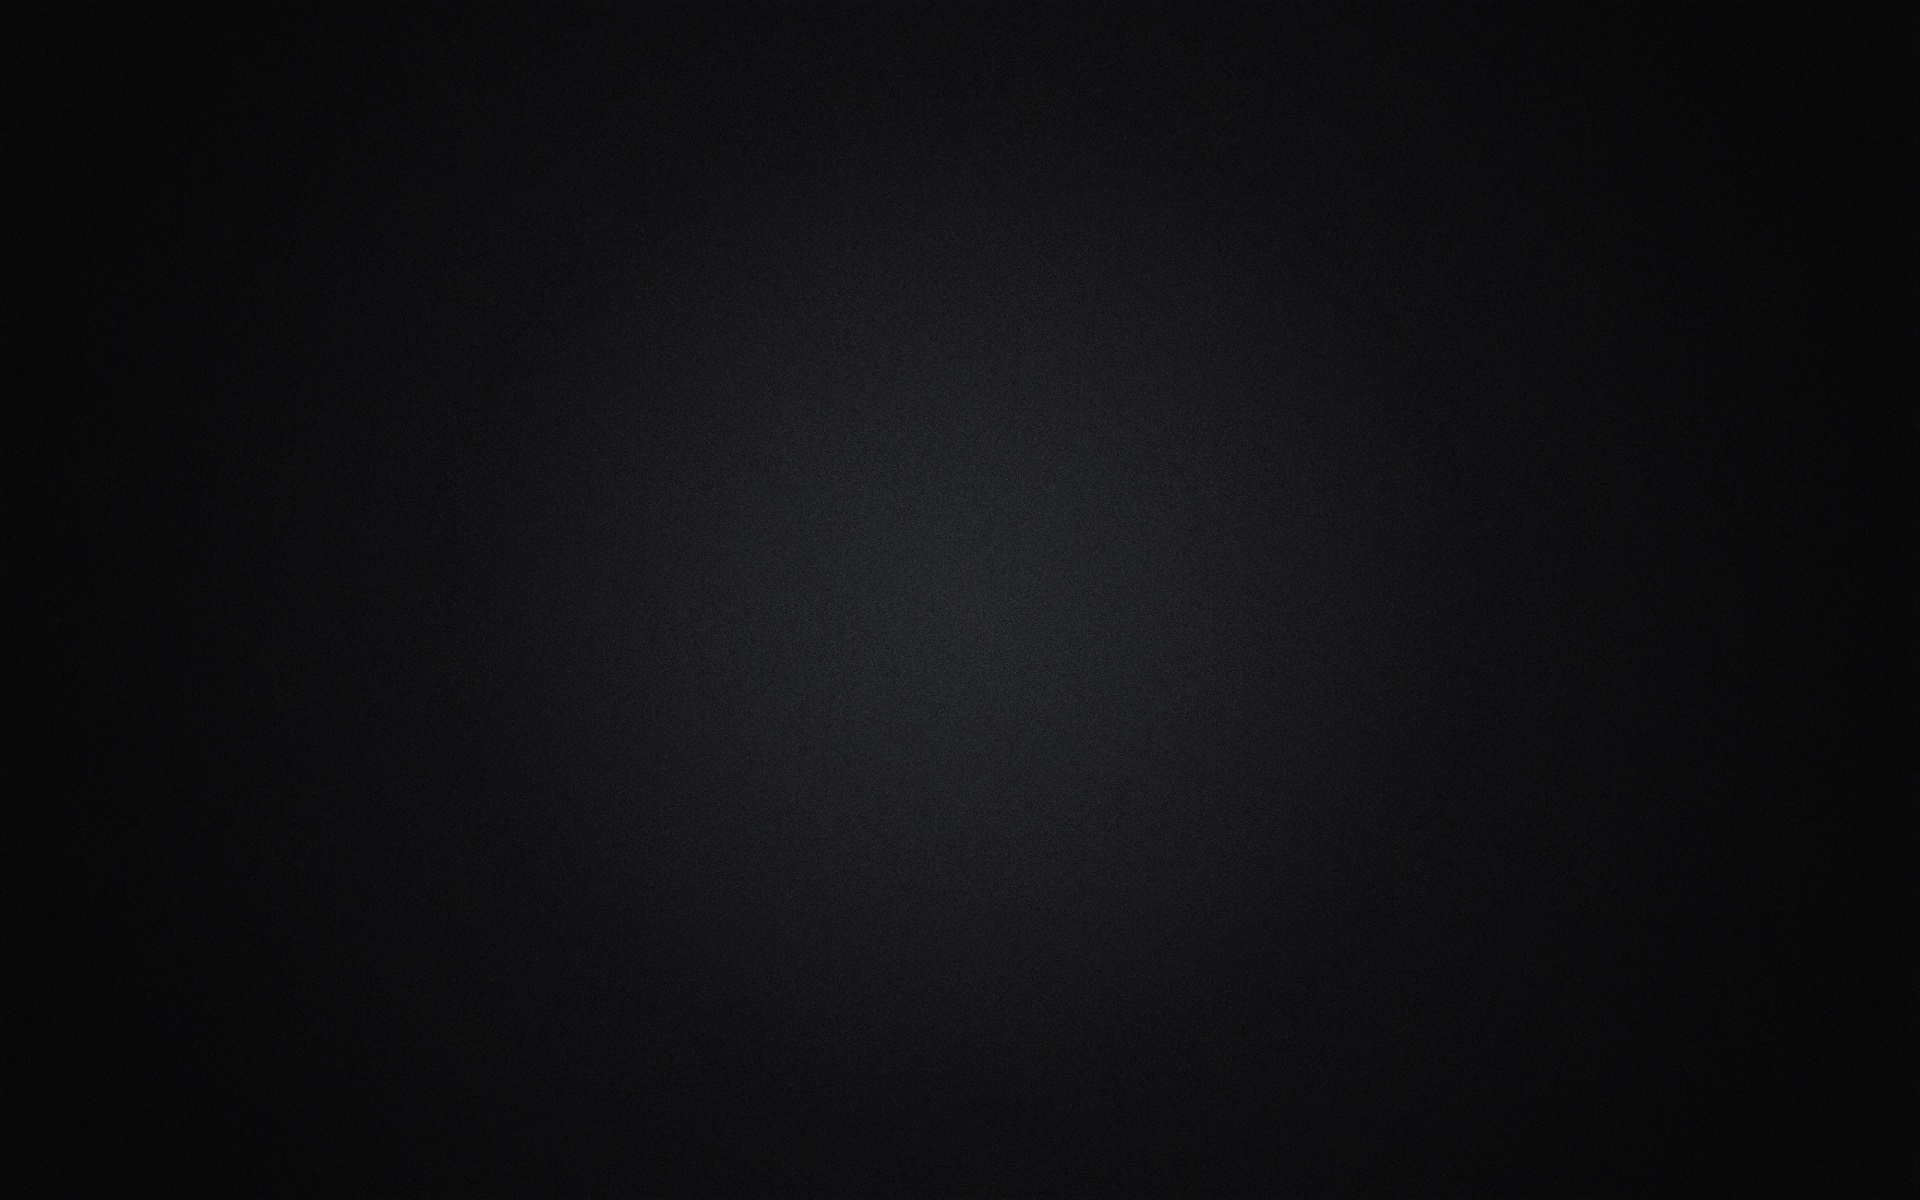 49+] Black Screen Wallpaper - WallpaperSafari